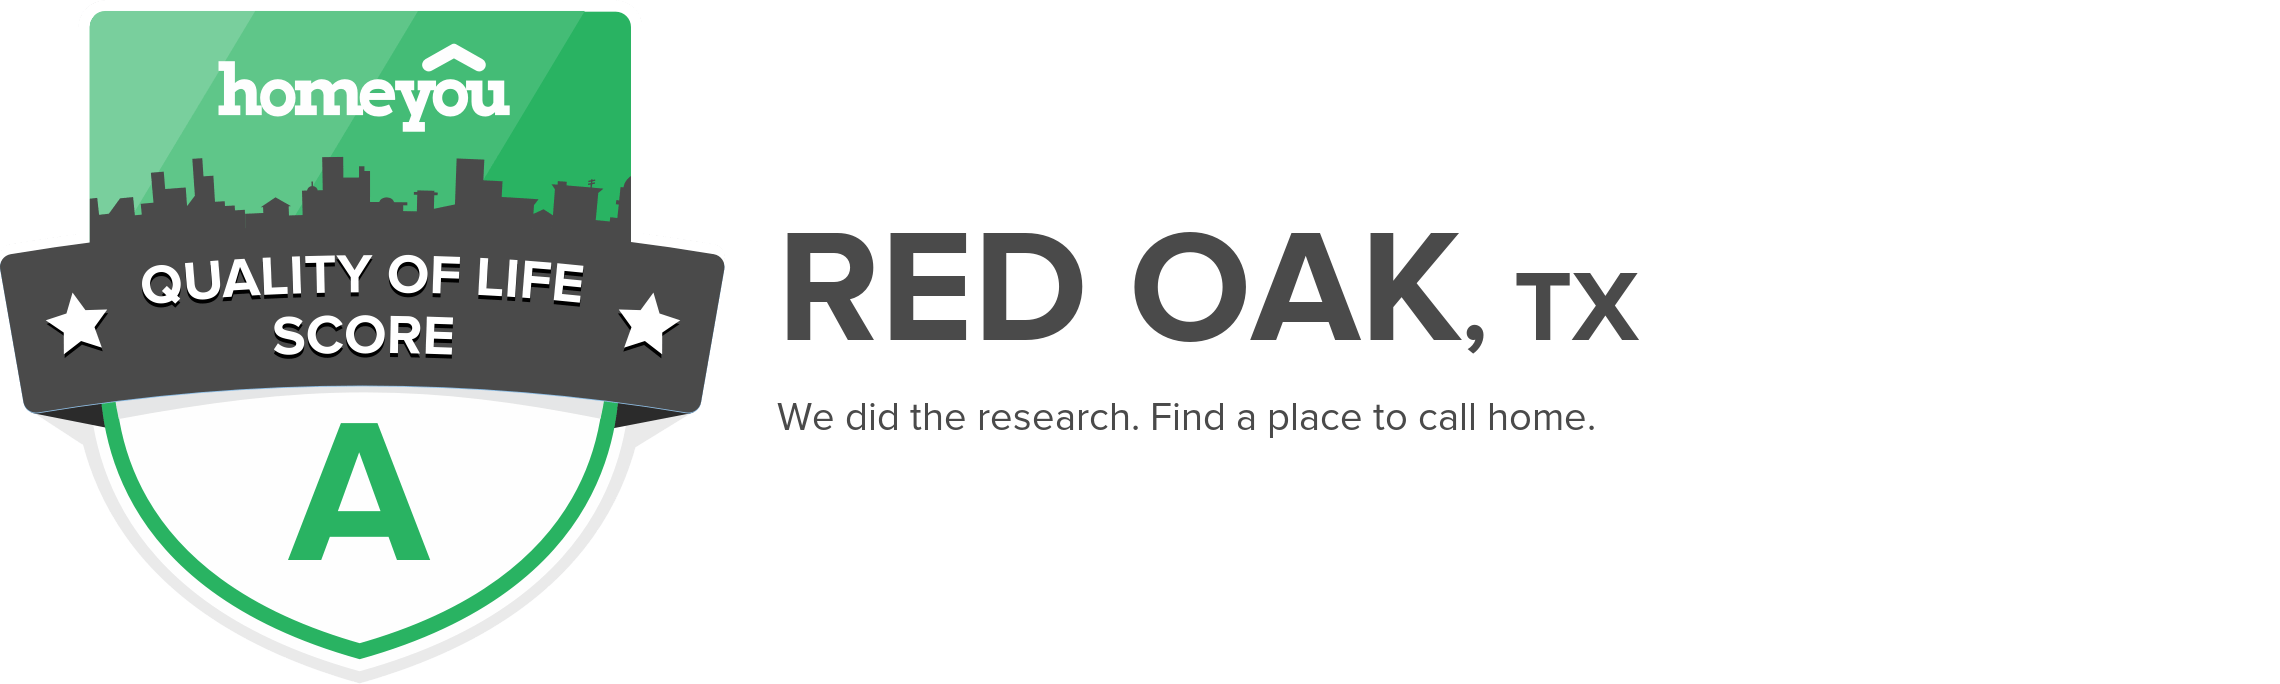 Red Oak, TX